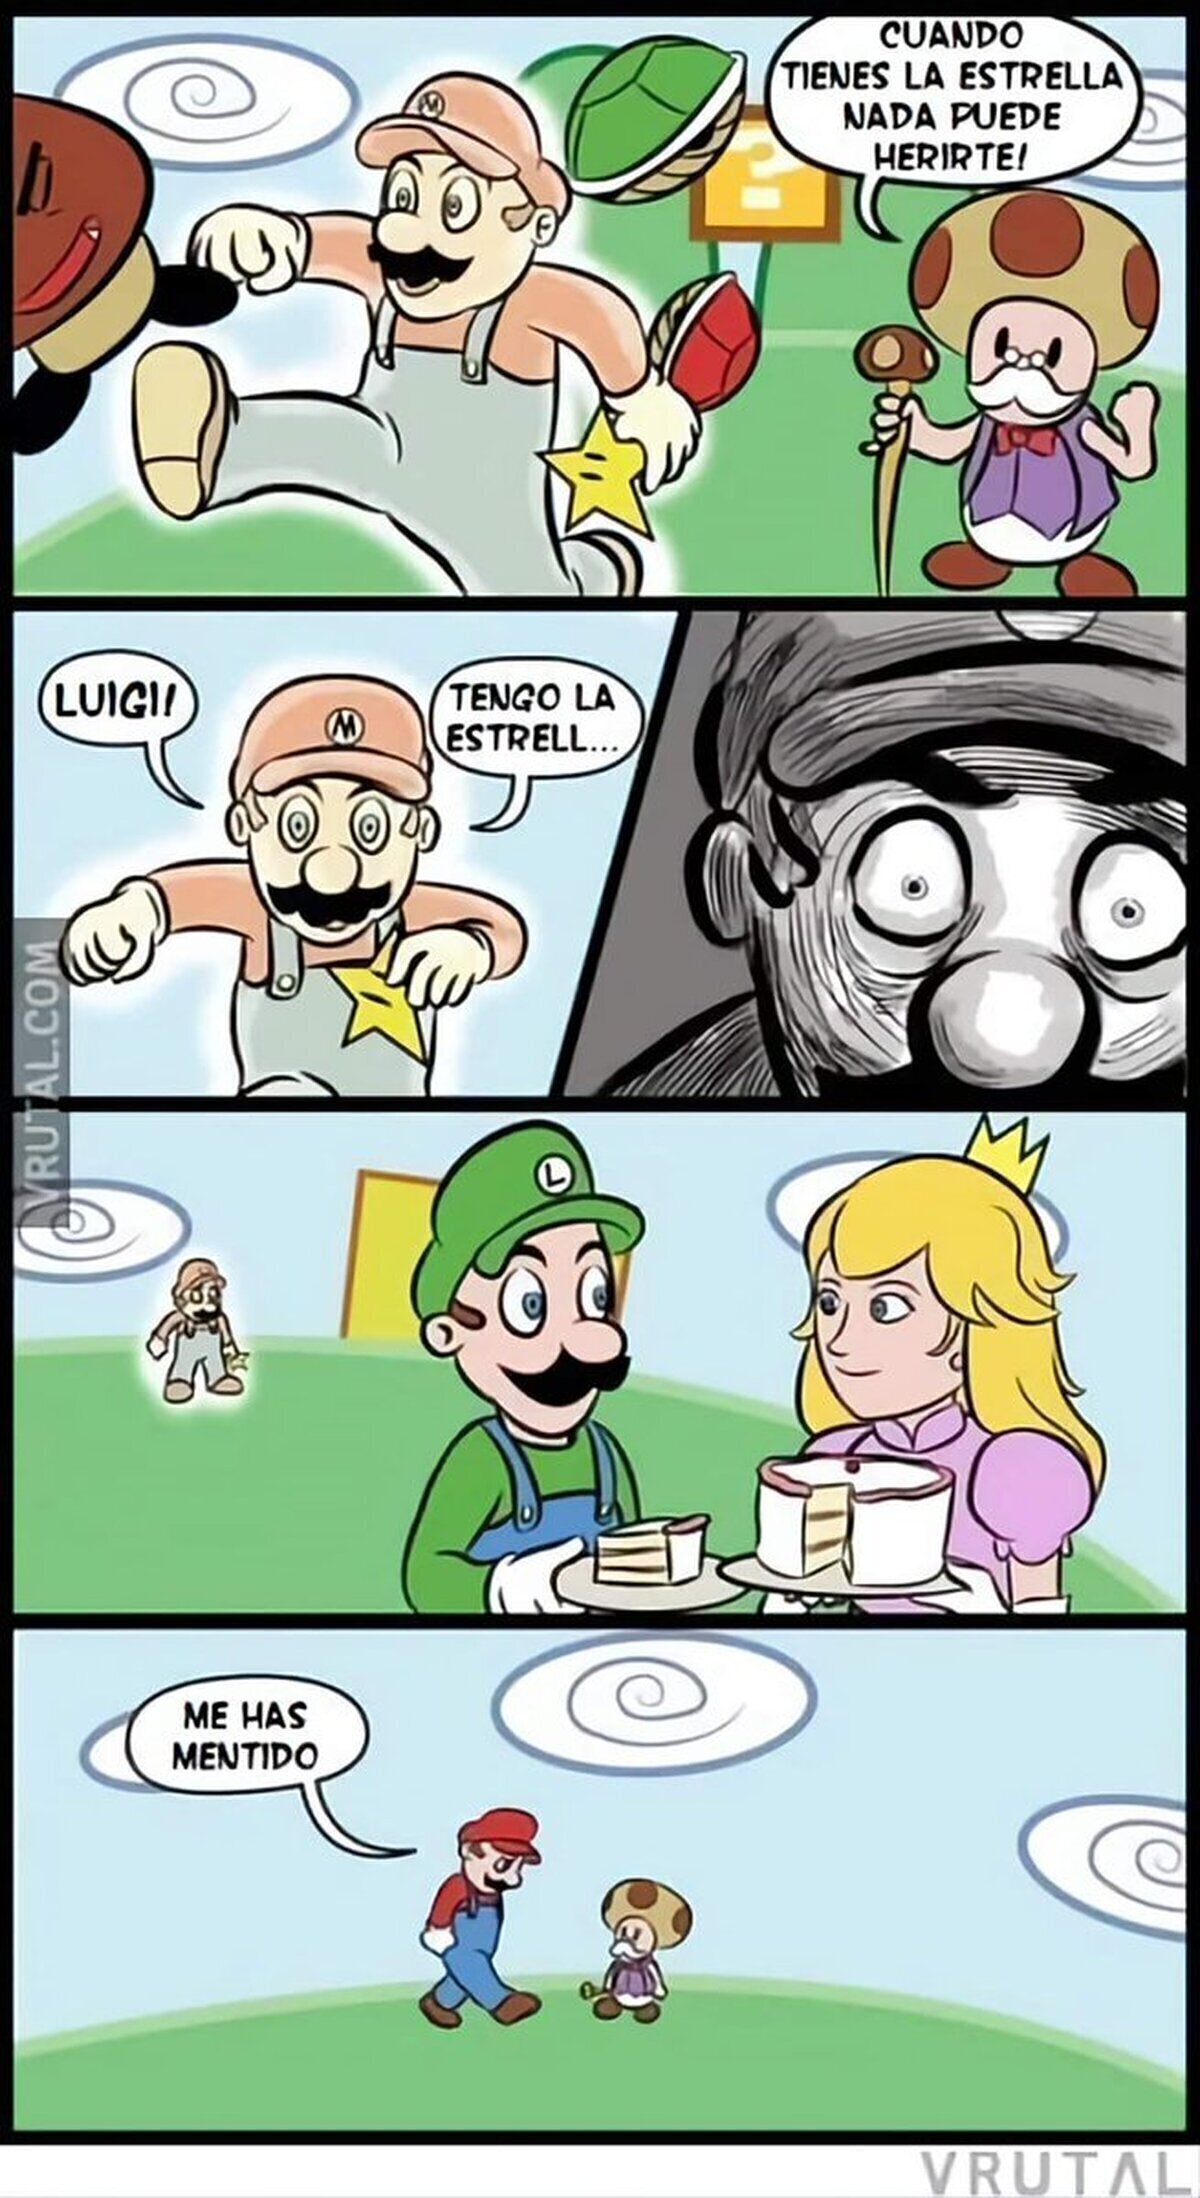 Pobre Mario...